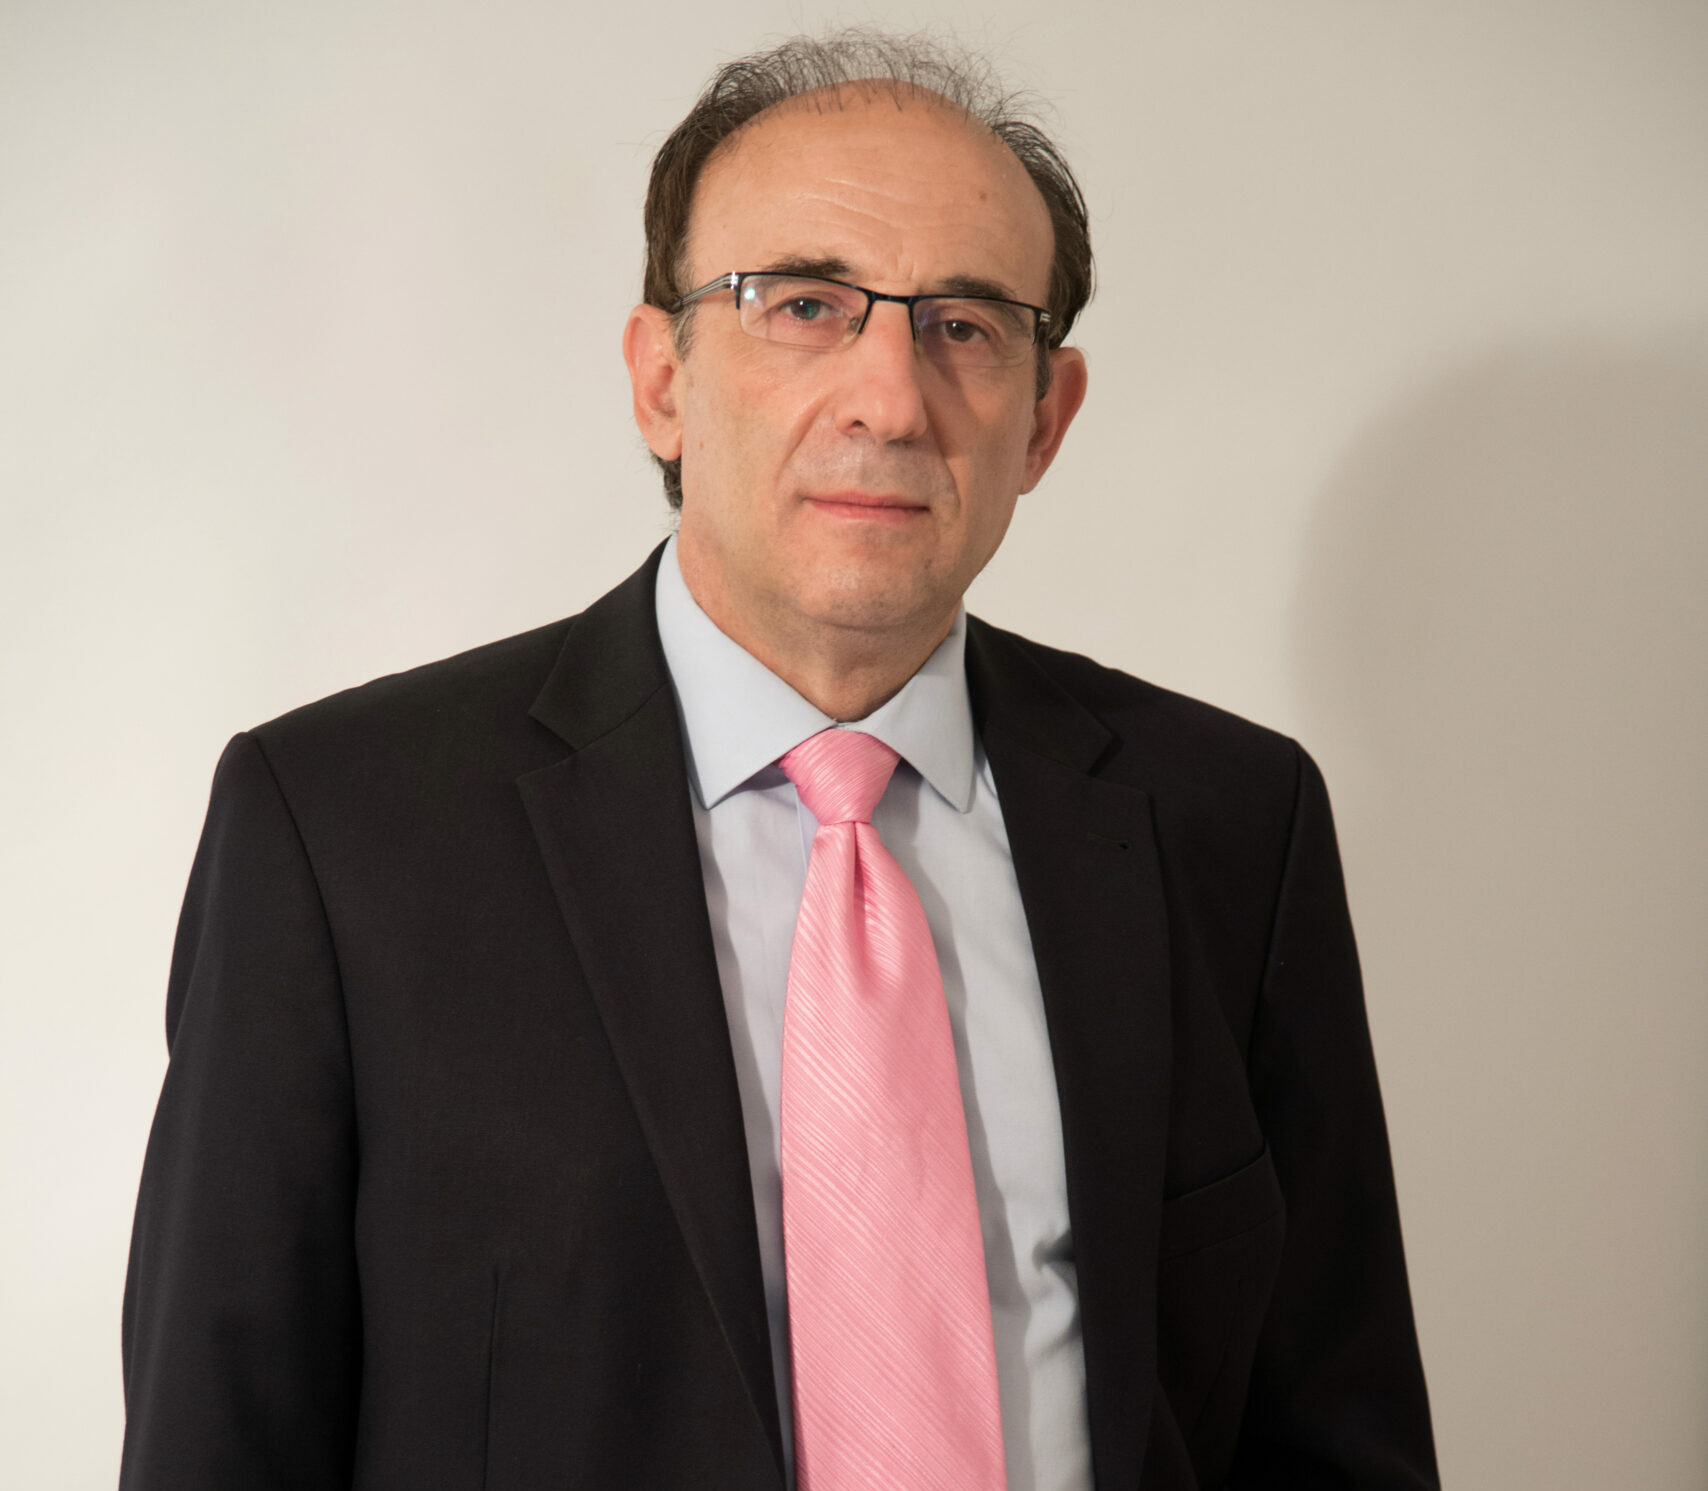 Πάτρα - Νικόλαος Καρακούκης: «Ο κ. Κούγιας θα συναντήσει  τις αγωγές στο γραφείο του»